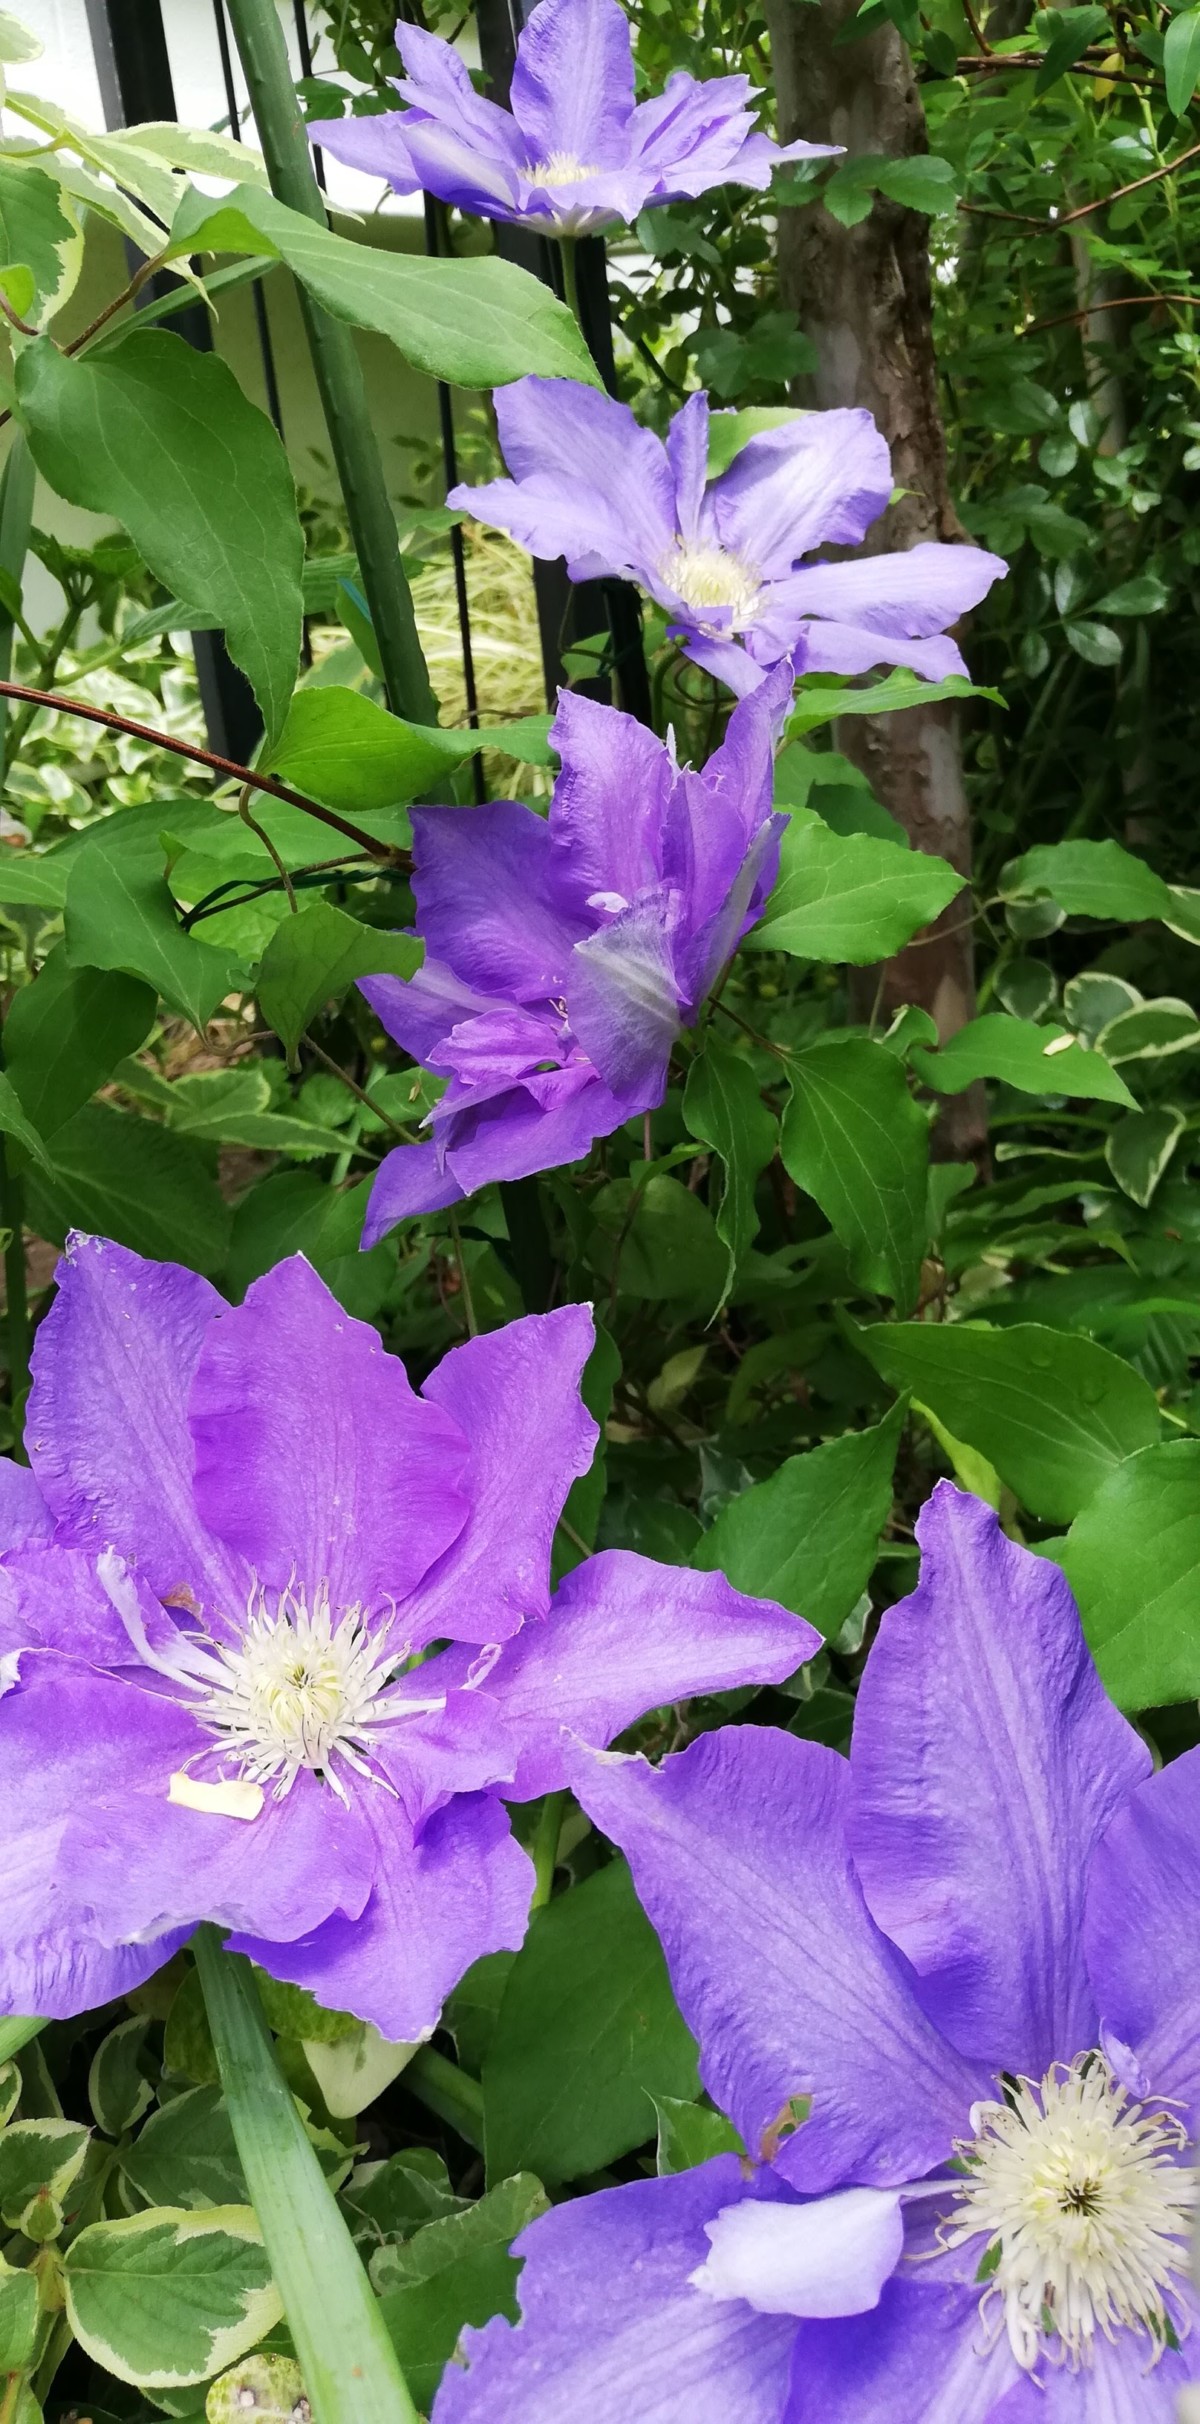 6月の我が家と可愛いお花たち 秋田の寄せ植えnaturia